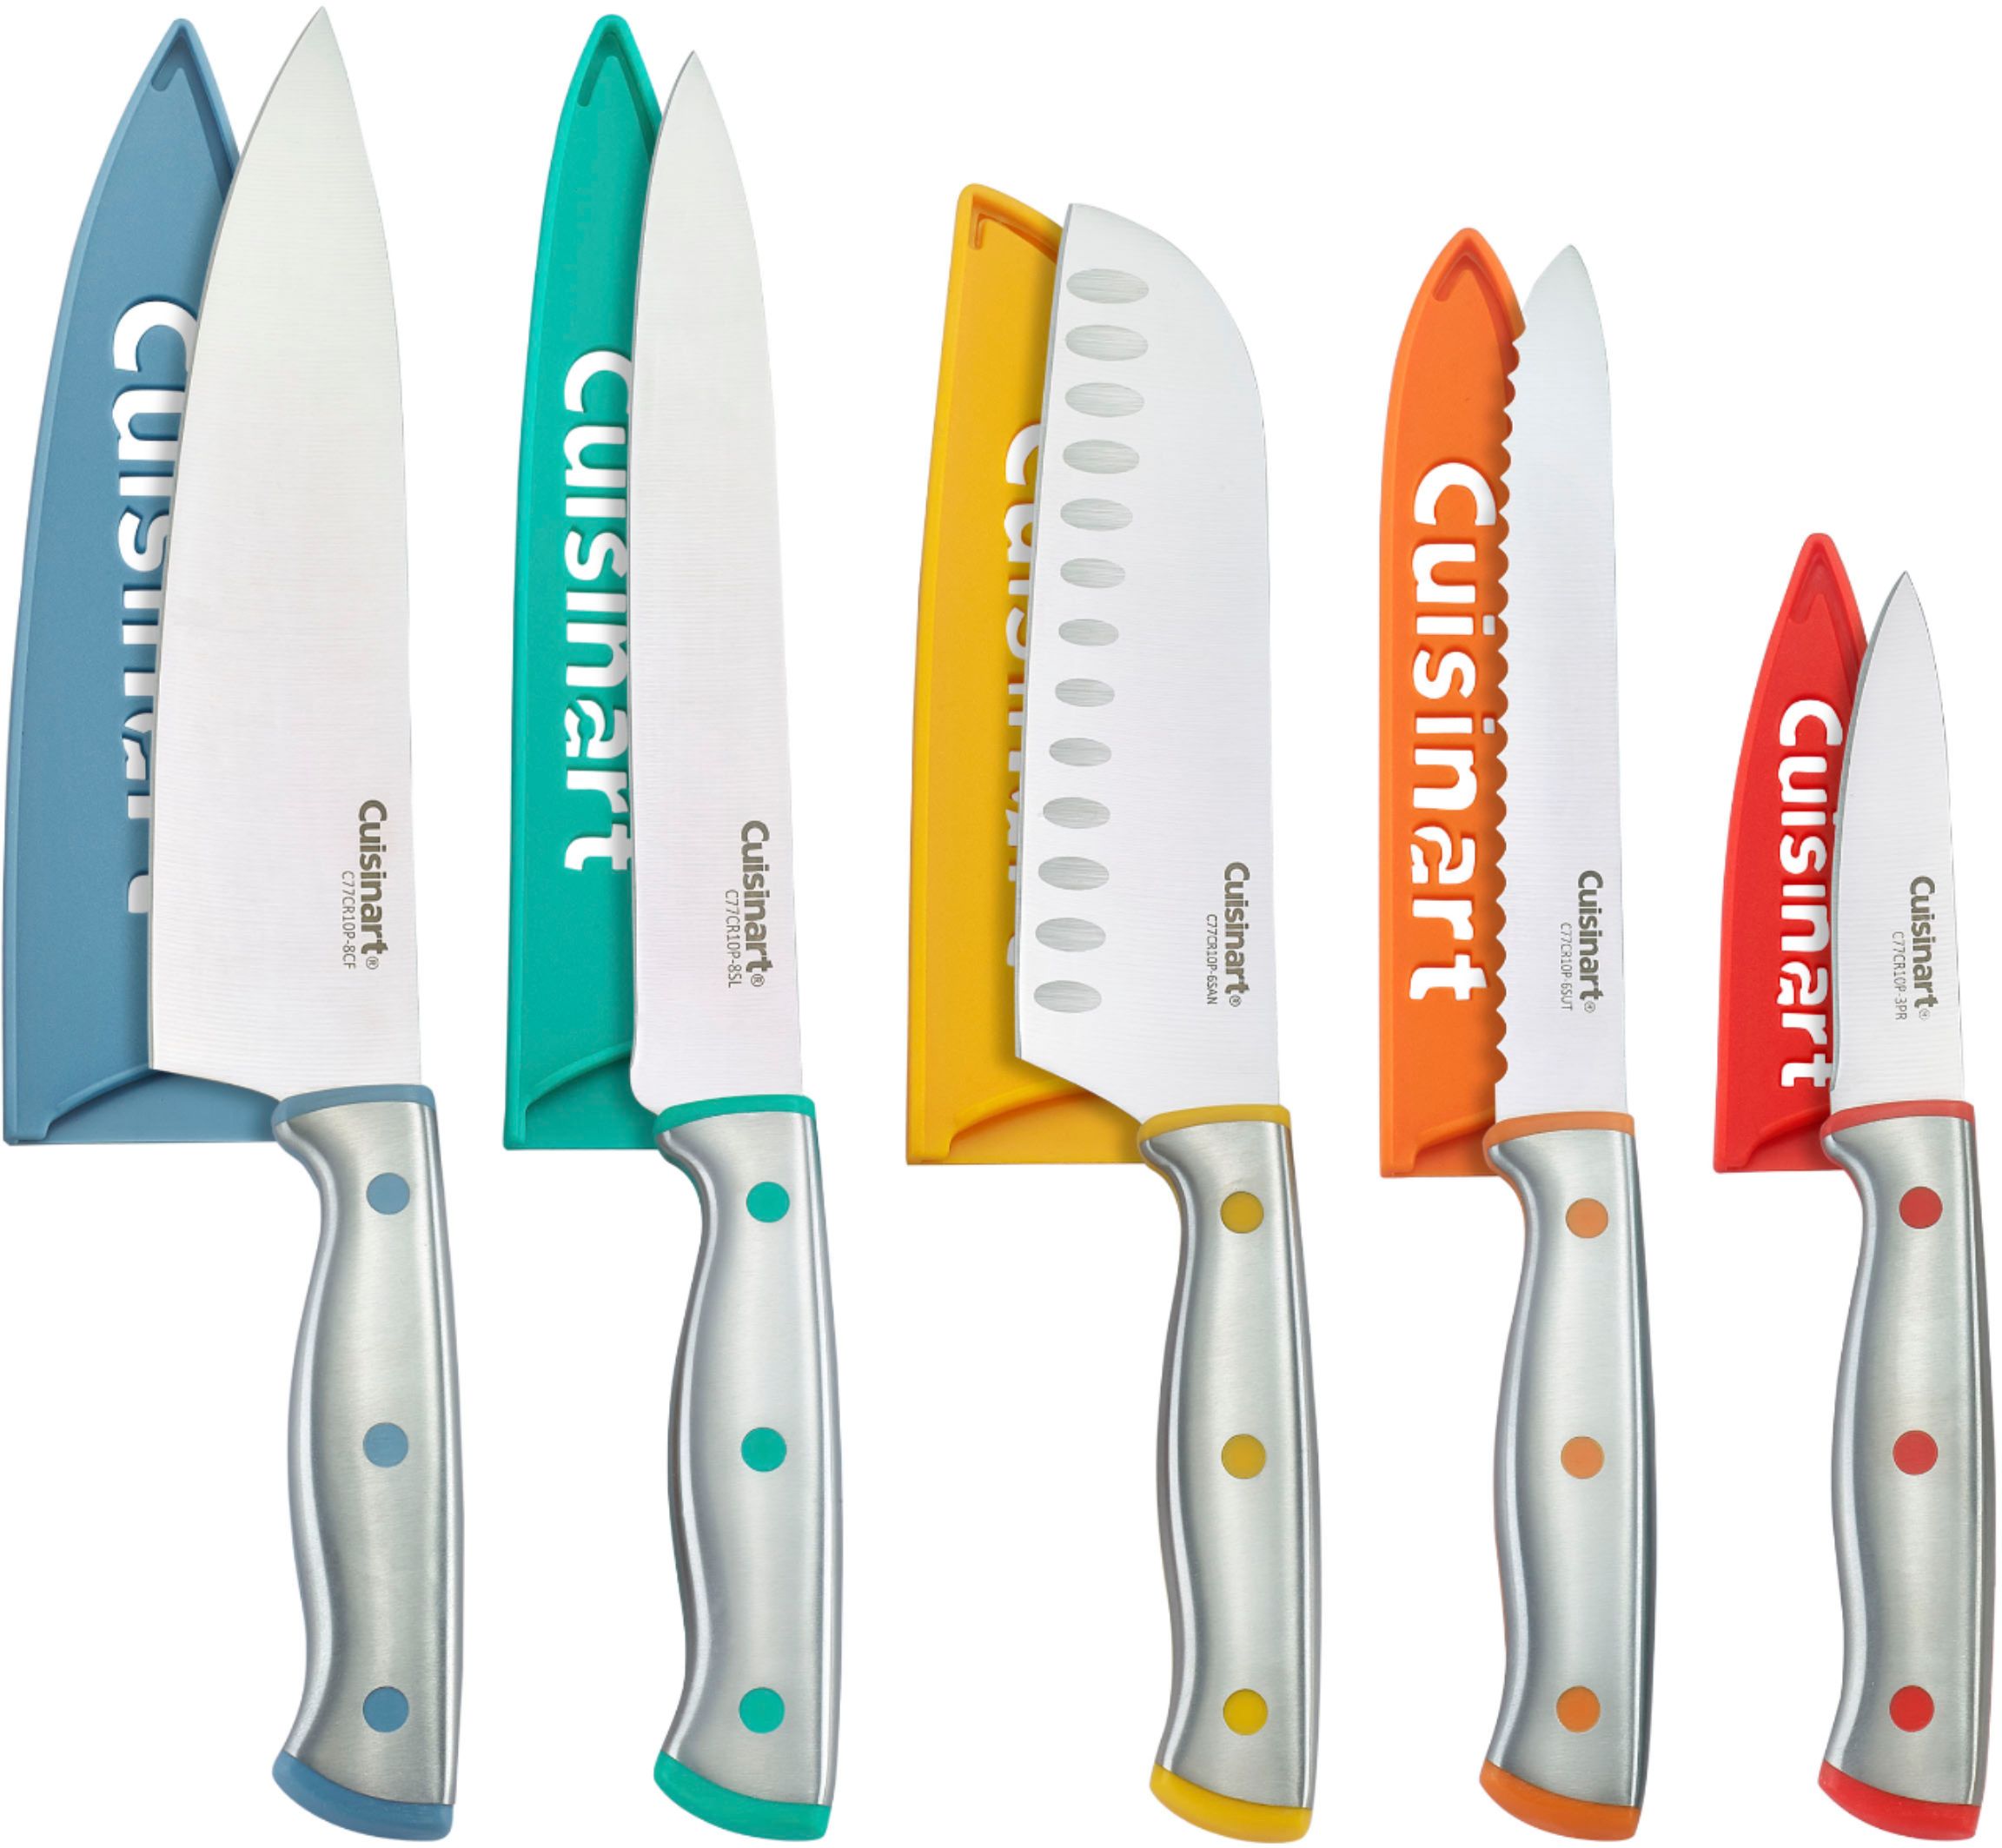 Cuisinart 12-Piece Assorted Knife Set & Reviews